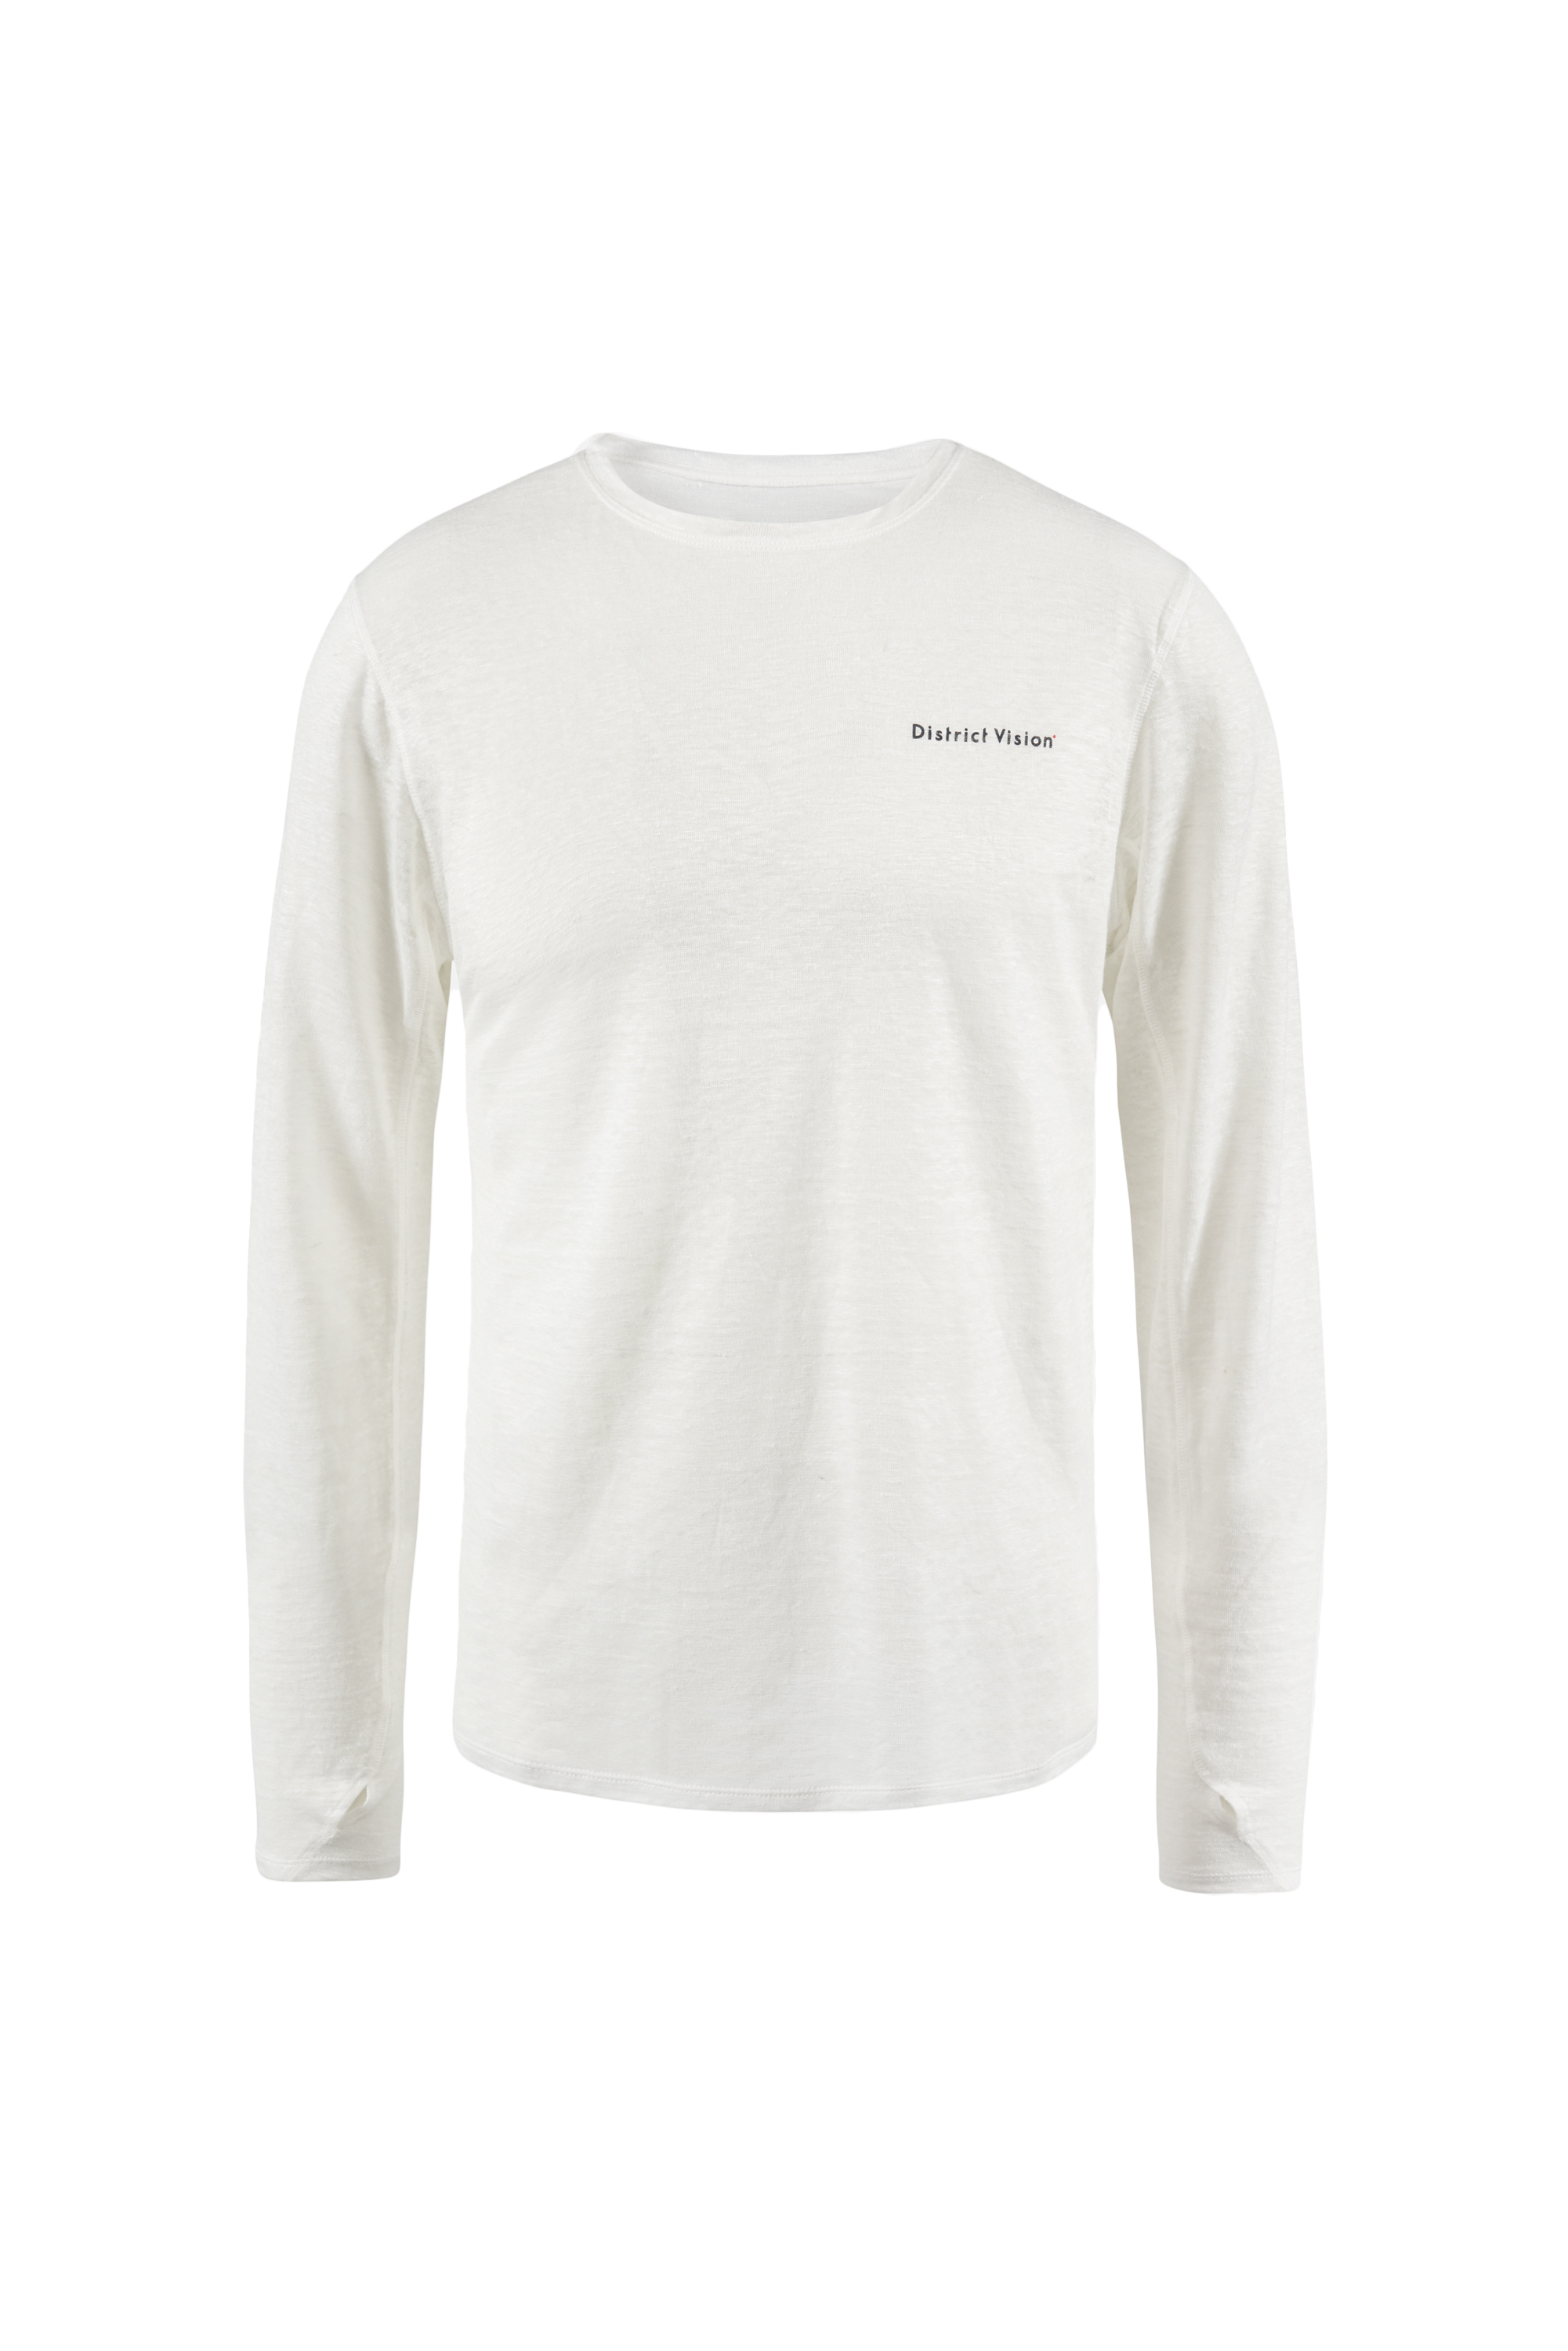 Hemp Long Sleeve T-Shirt, White